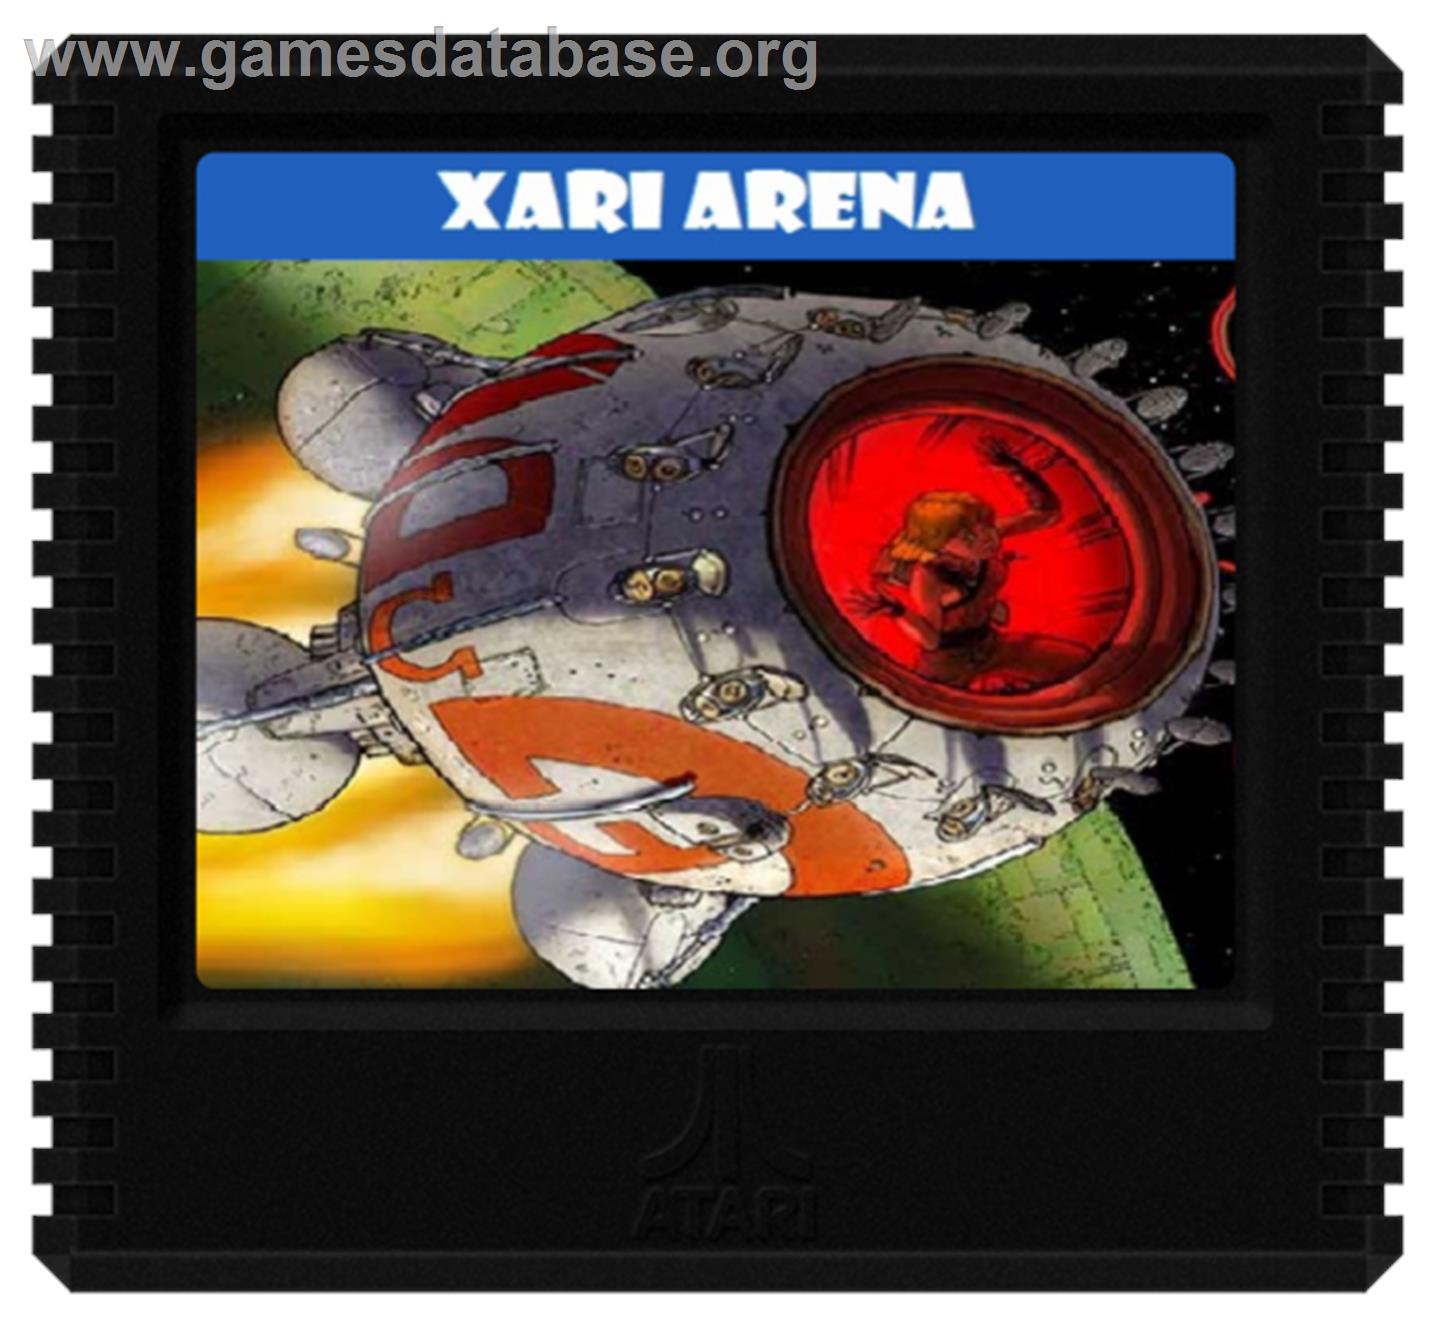 Xari Arena - Atari 5200 - Artwork - Cartridge